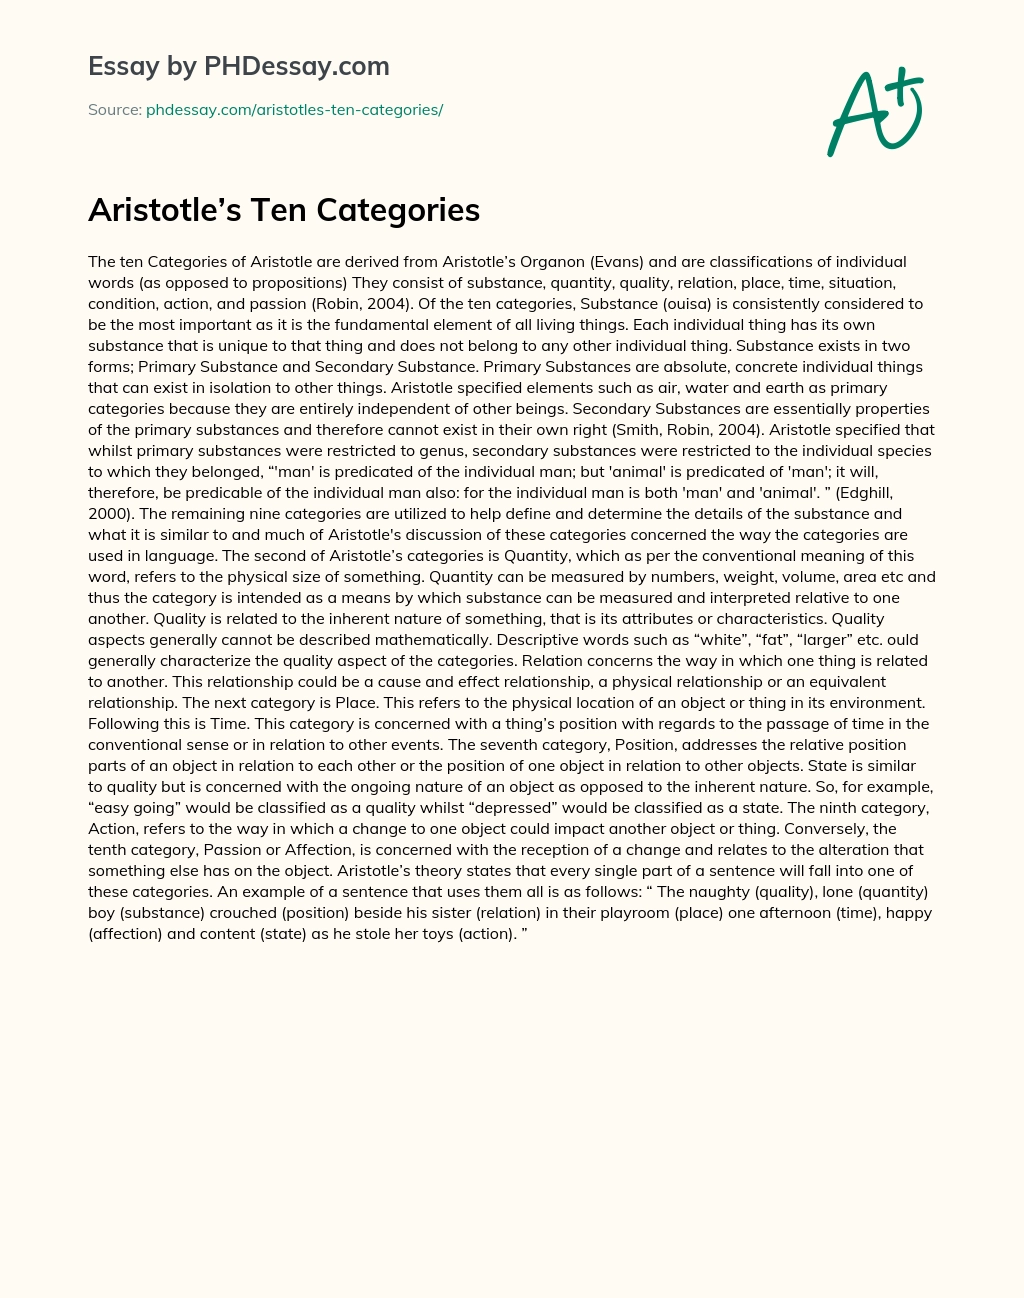 Aristotle’s Ten Categories essay